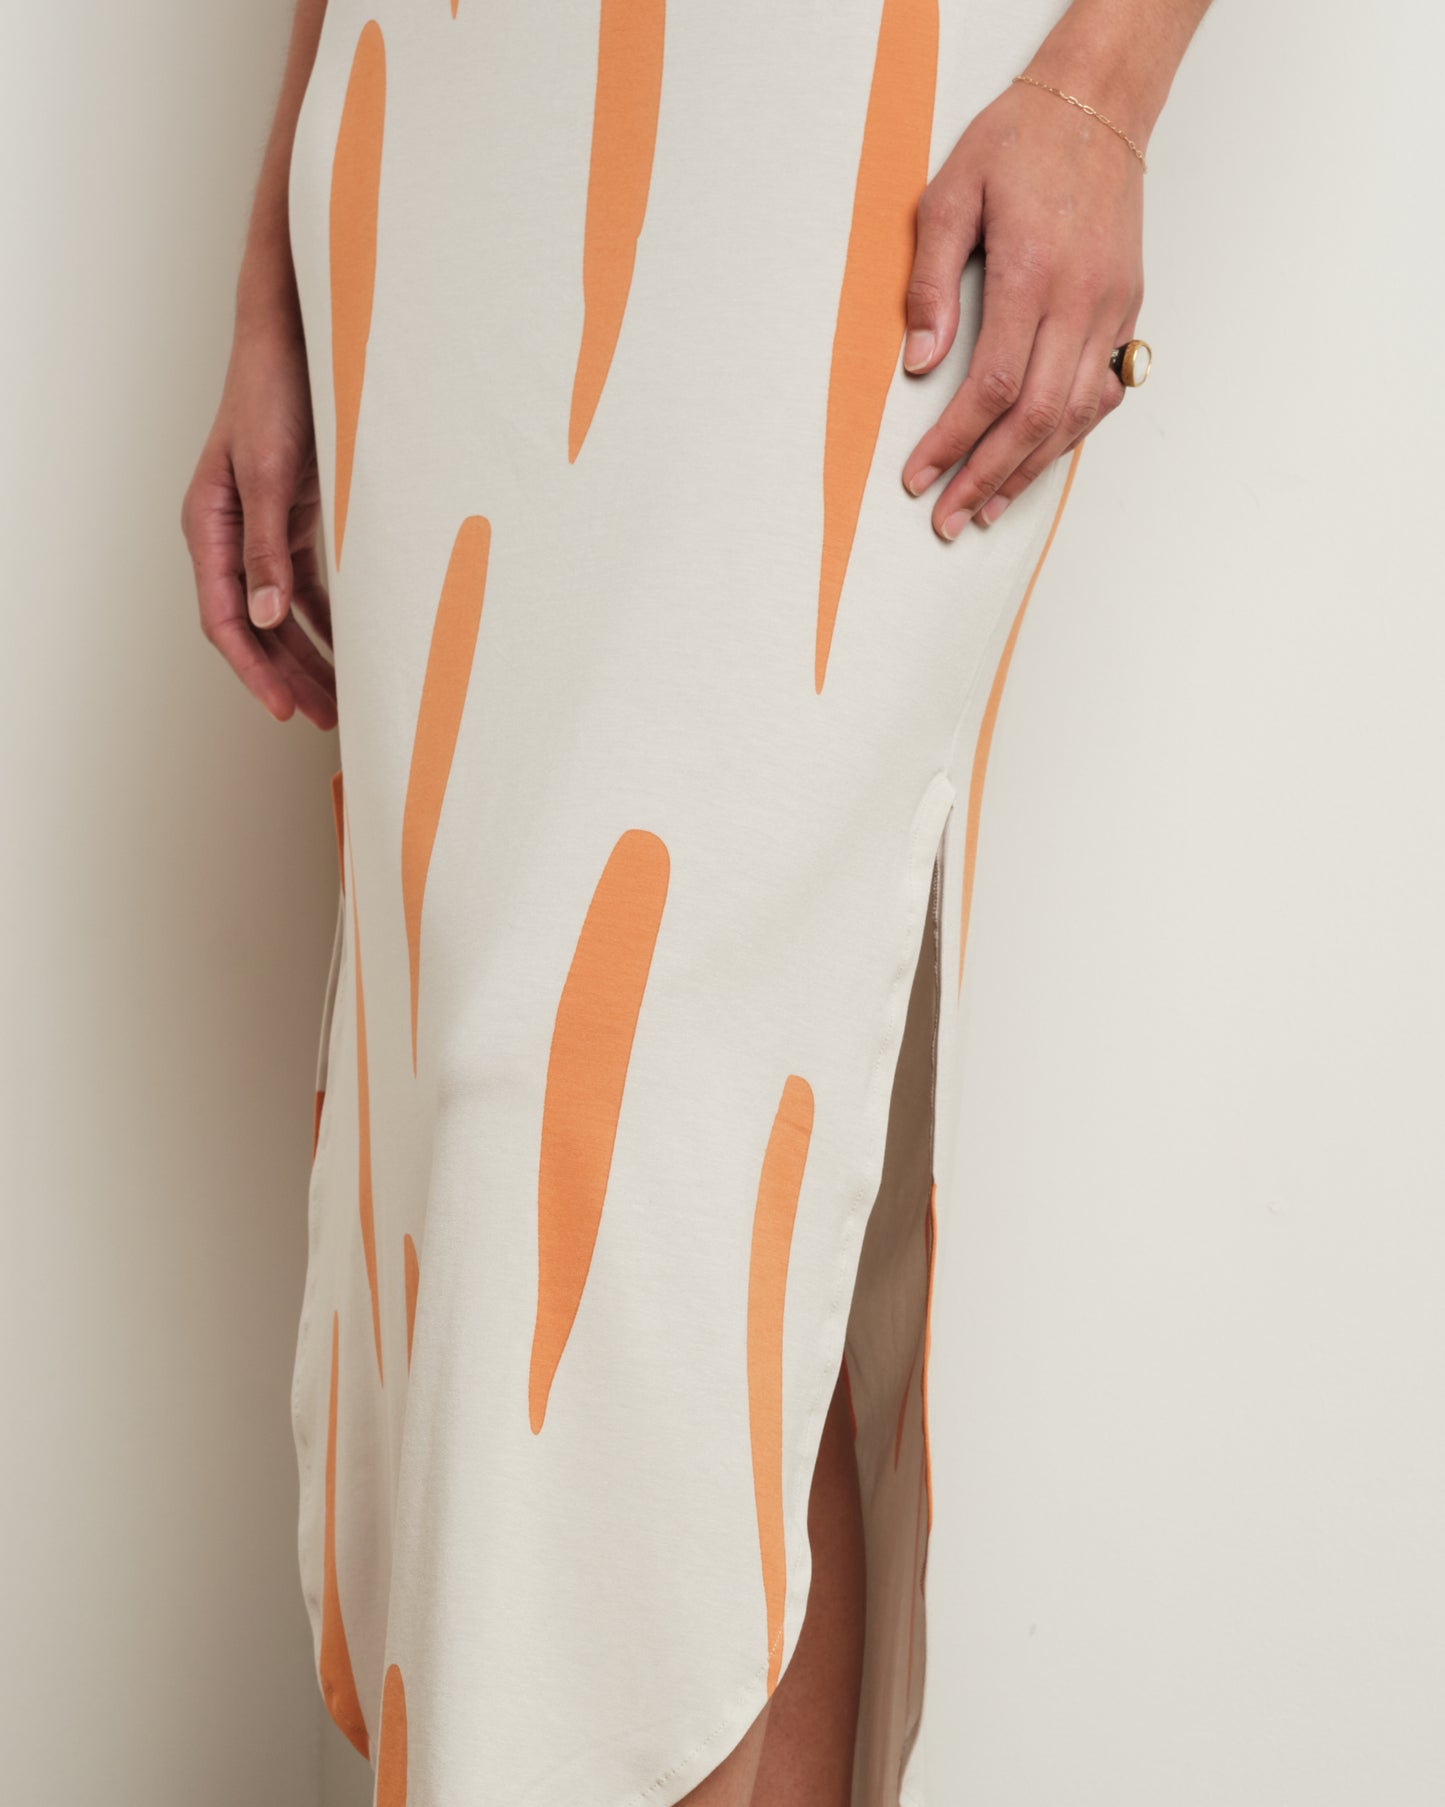 Long Easy Dress in White/Orange Print